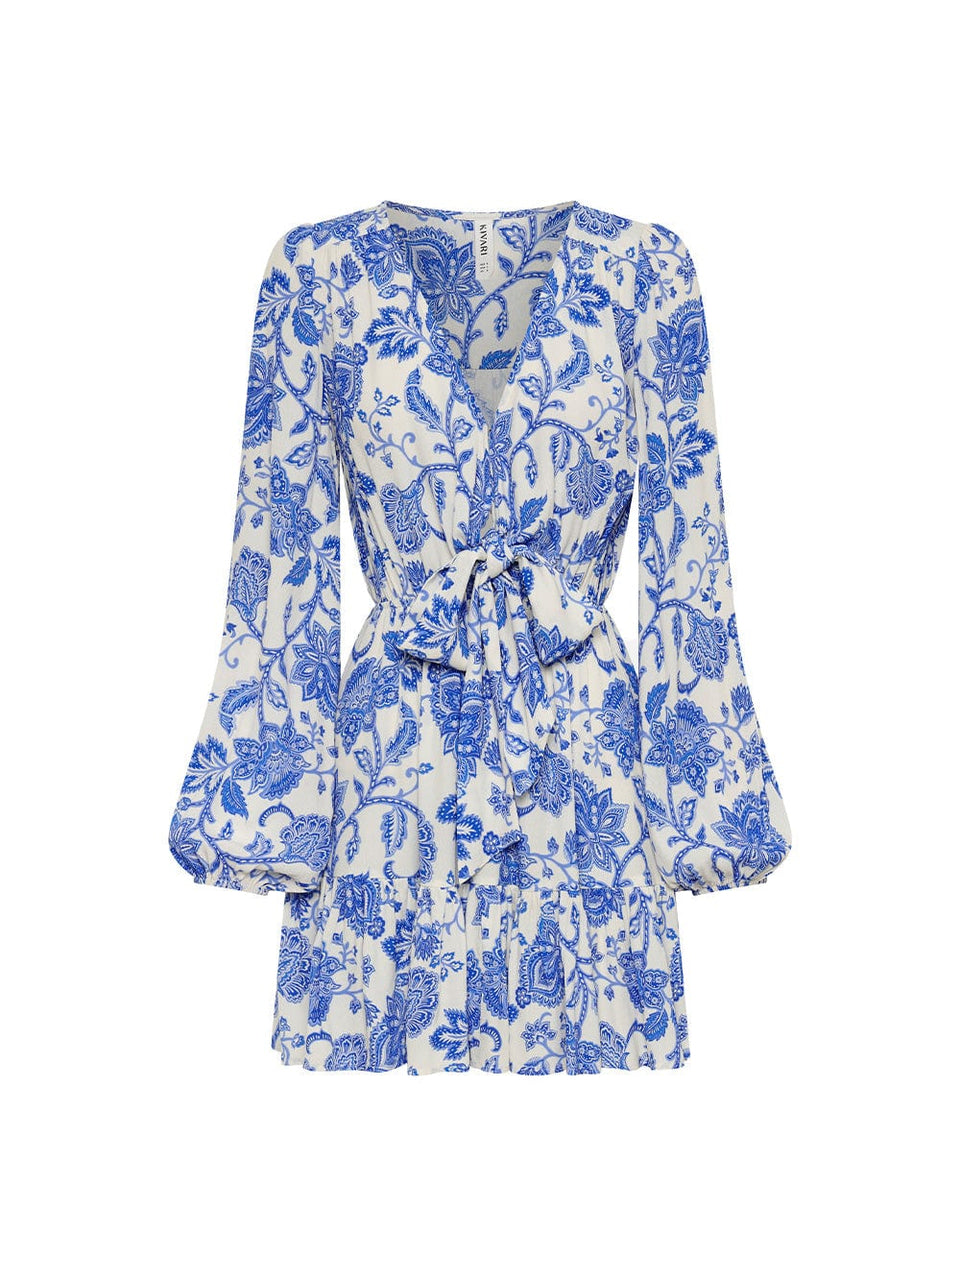 Athena Tie Front Mini Dress KIVARI | Blue and white paisley mini dress